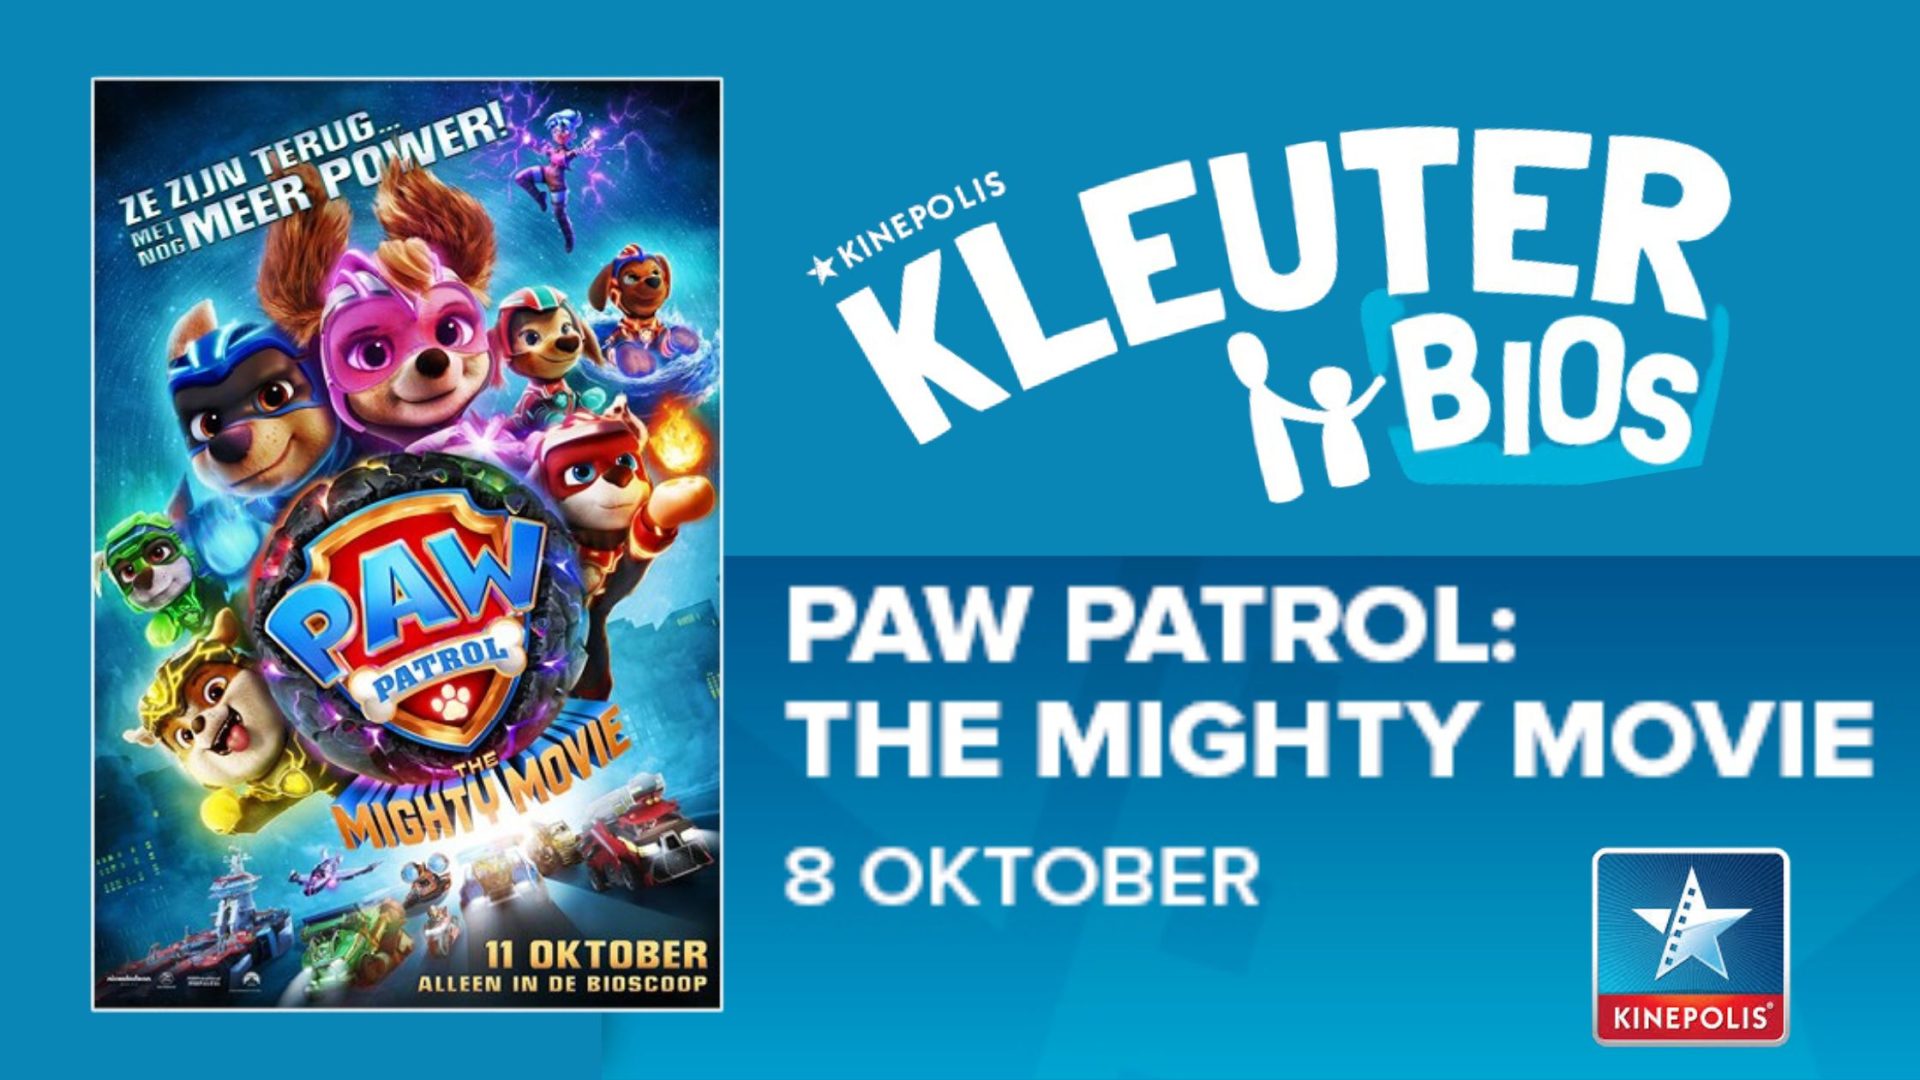 Kinepolis Kleuterbios Paw Patrol The Mighty Movie (5)